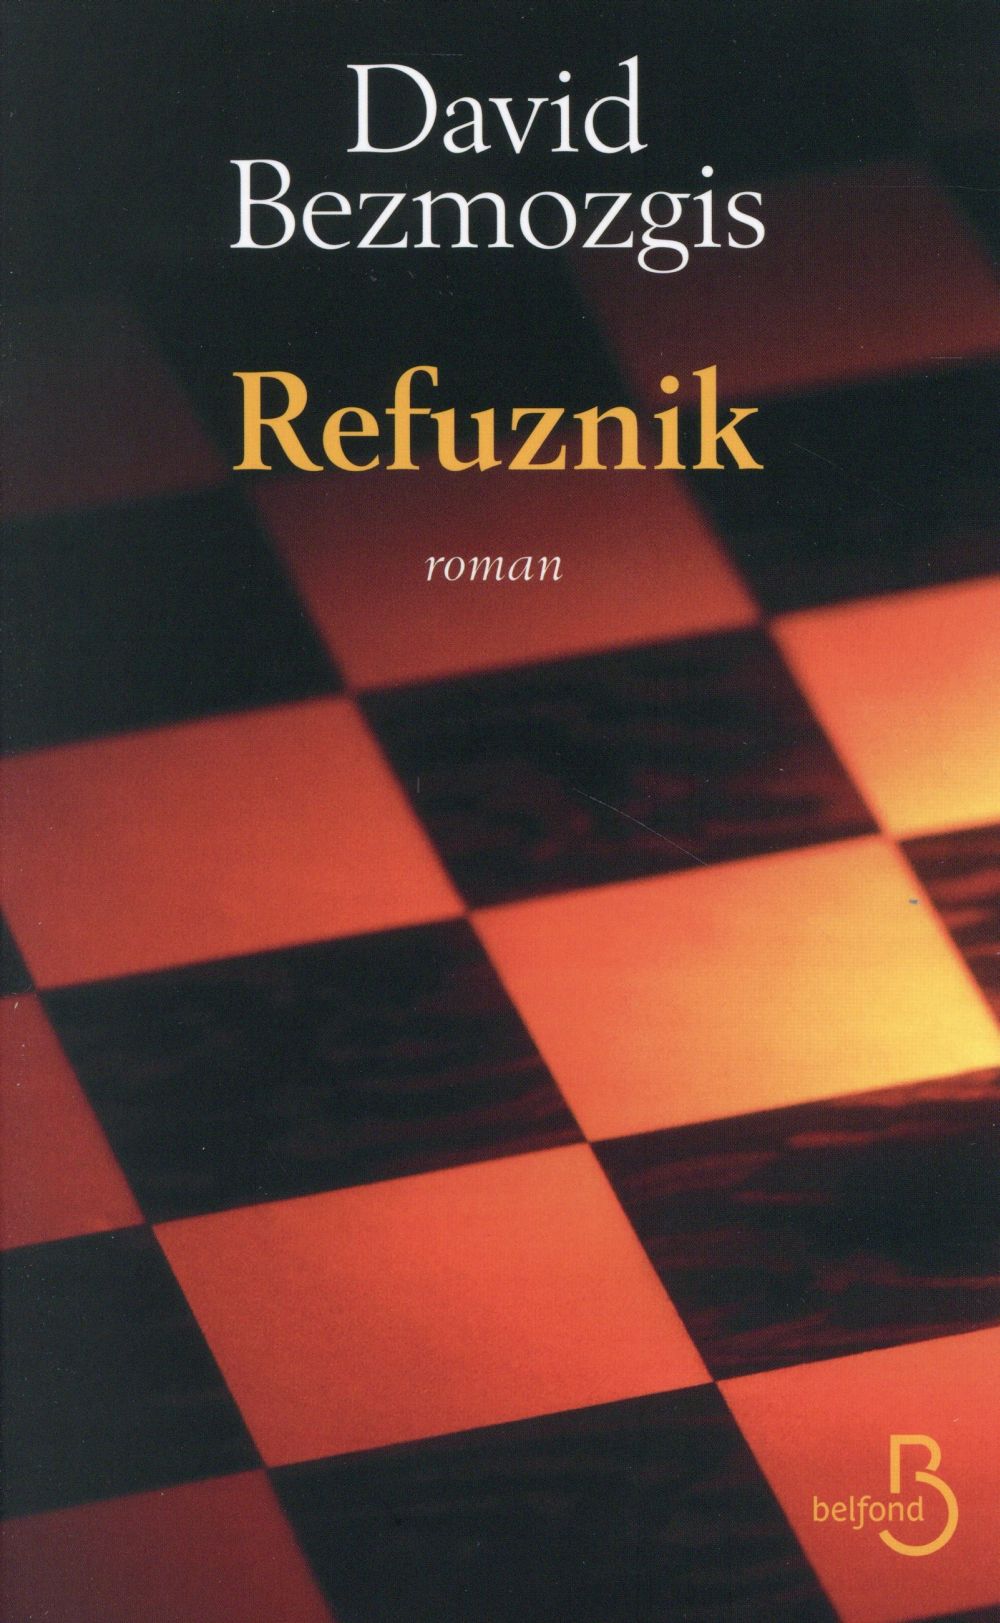 "Refuznik" de David Bezmozgis - la chronique #18 du Club des Explorateurs